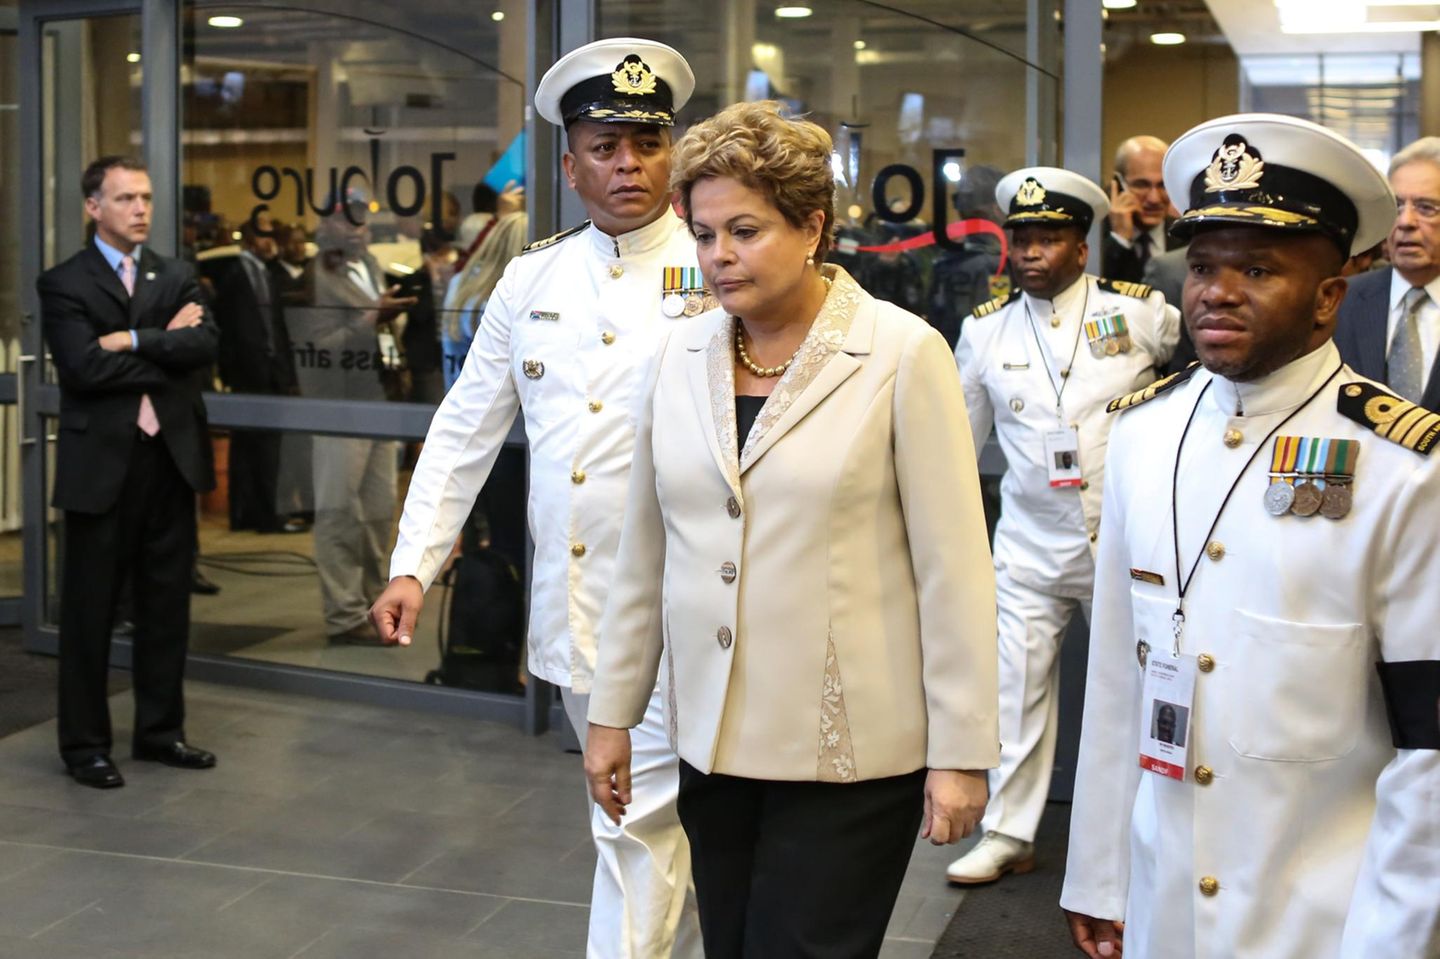 Auch Brasiliens Staatsoberhaupt Dilma Rousseff ist gekommen um Abschied zu nehmen.